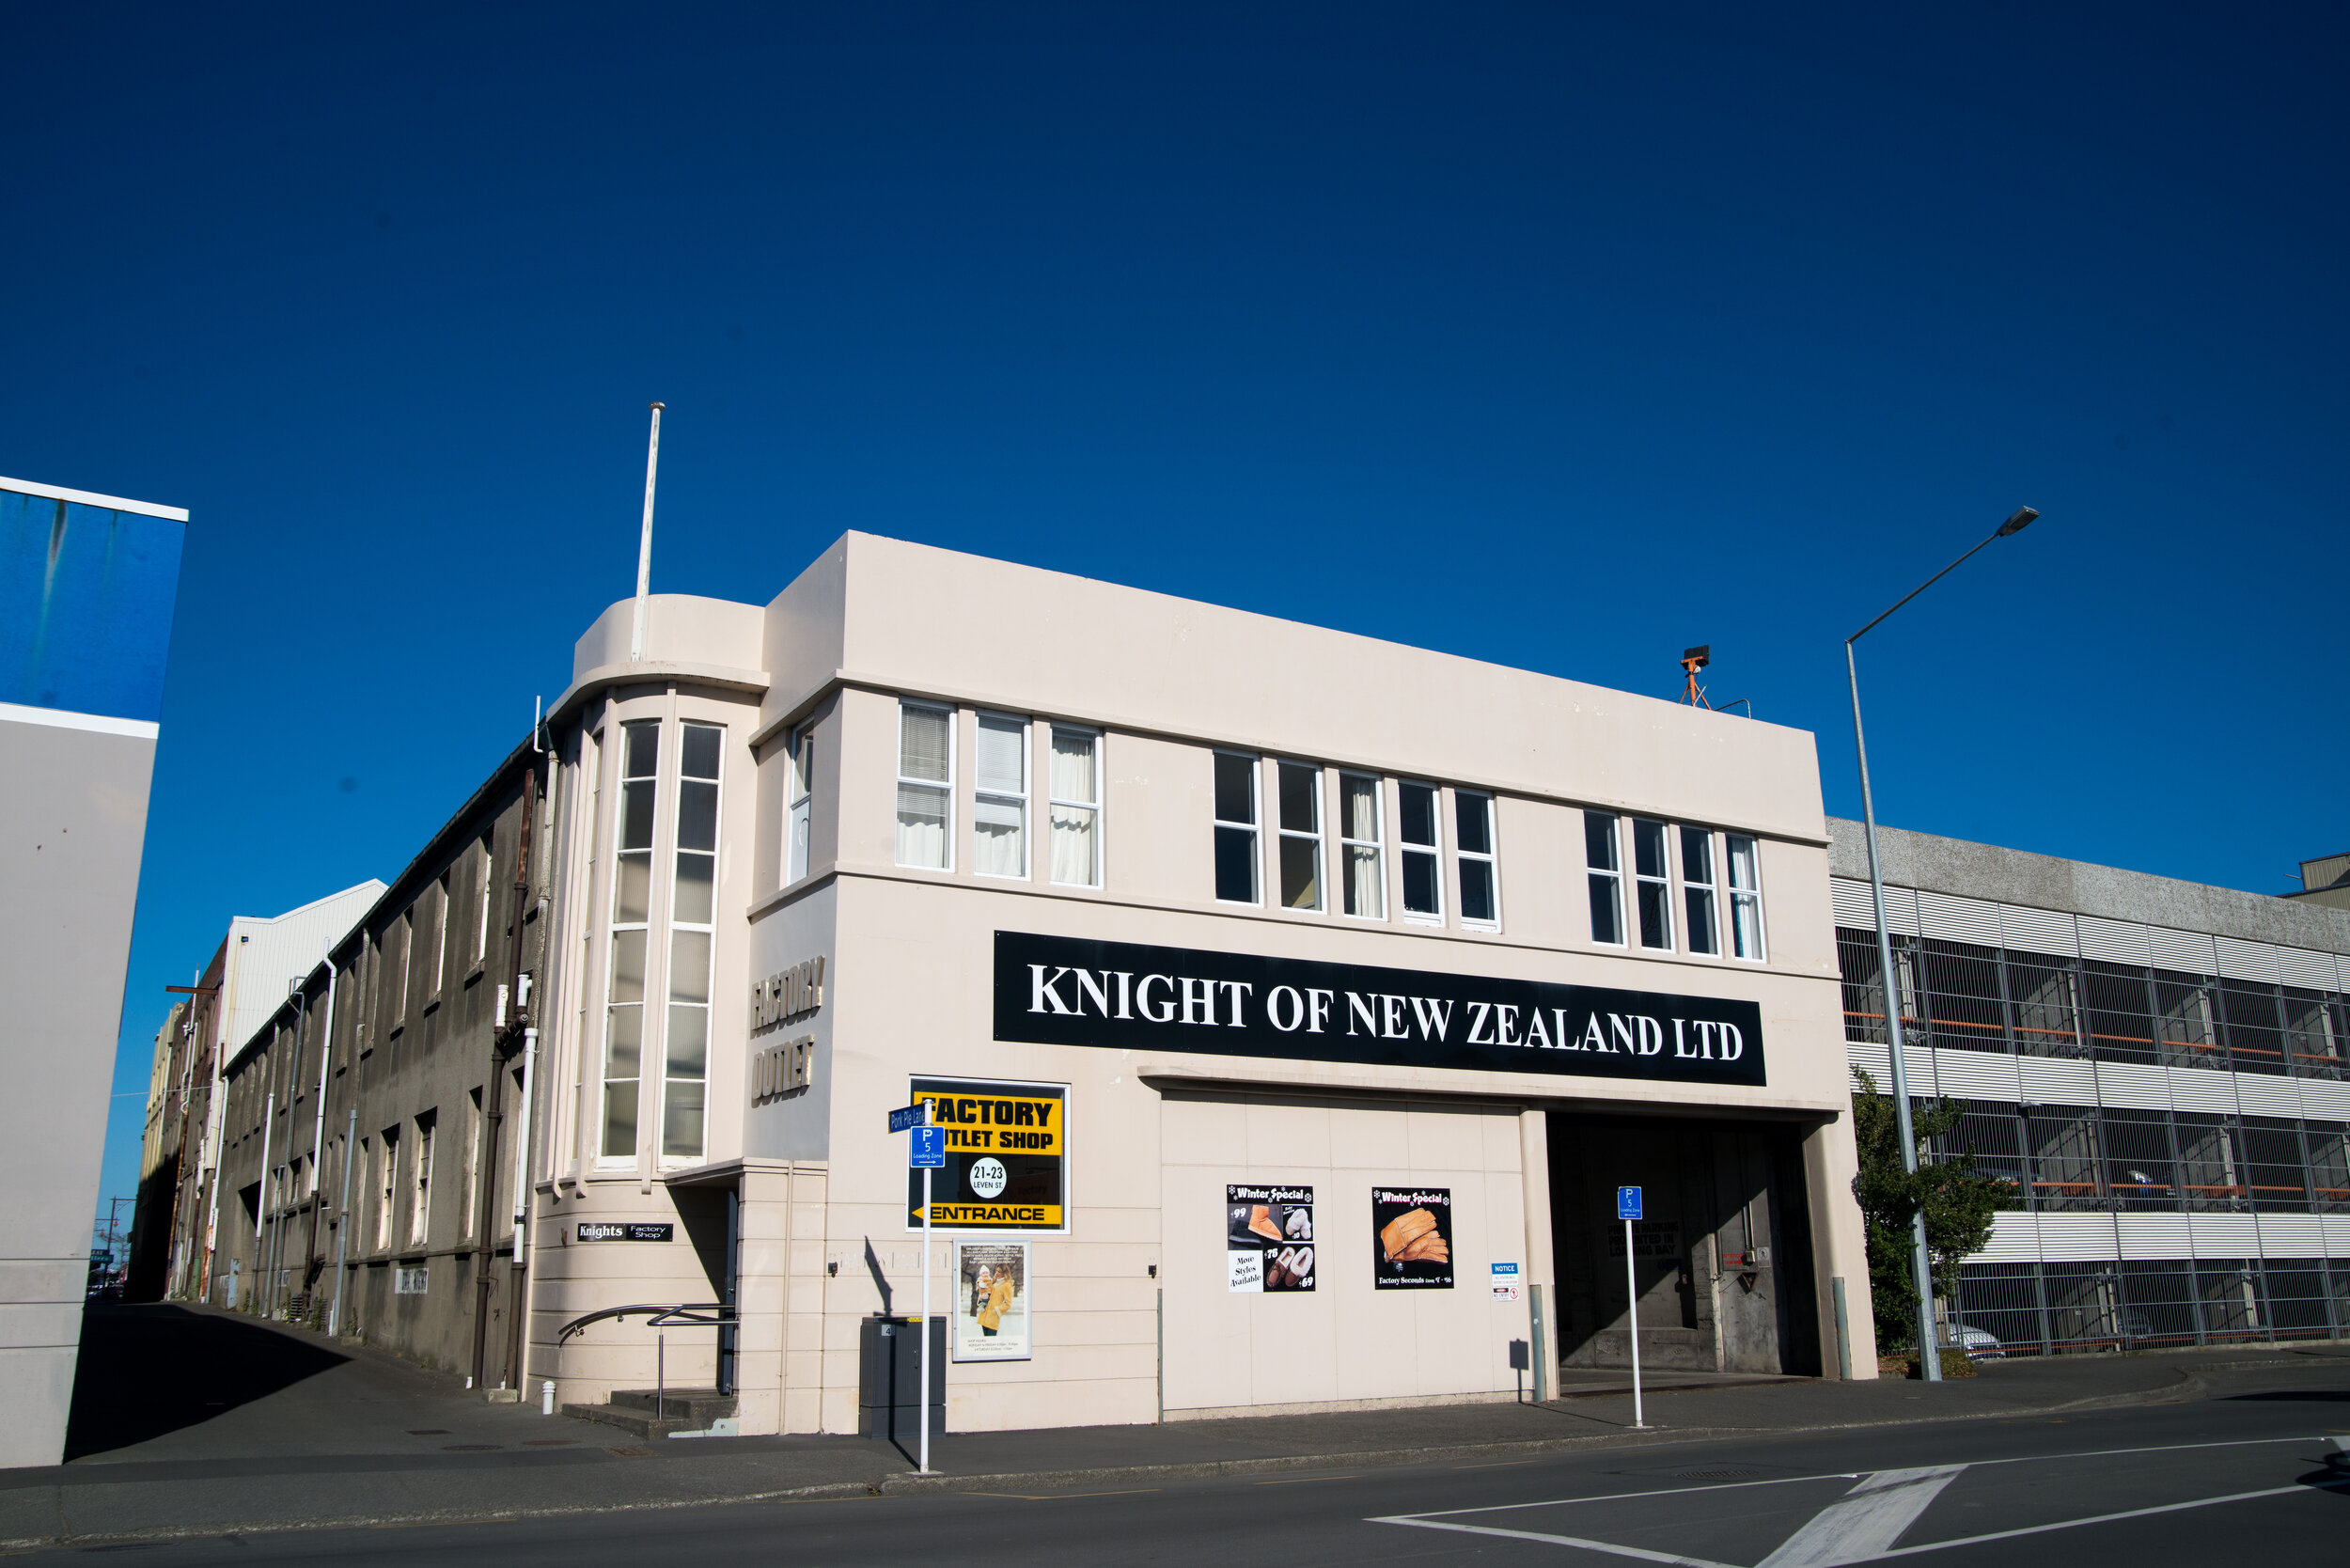 Knight of New Zealand